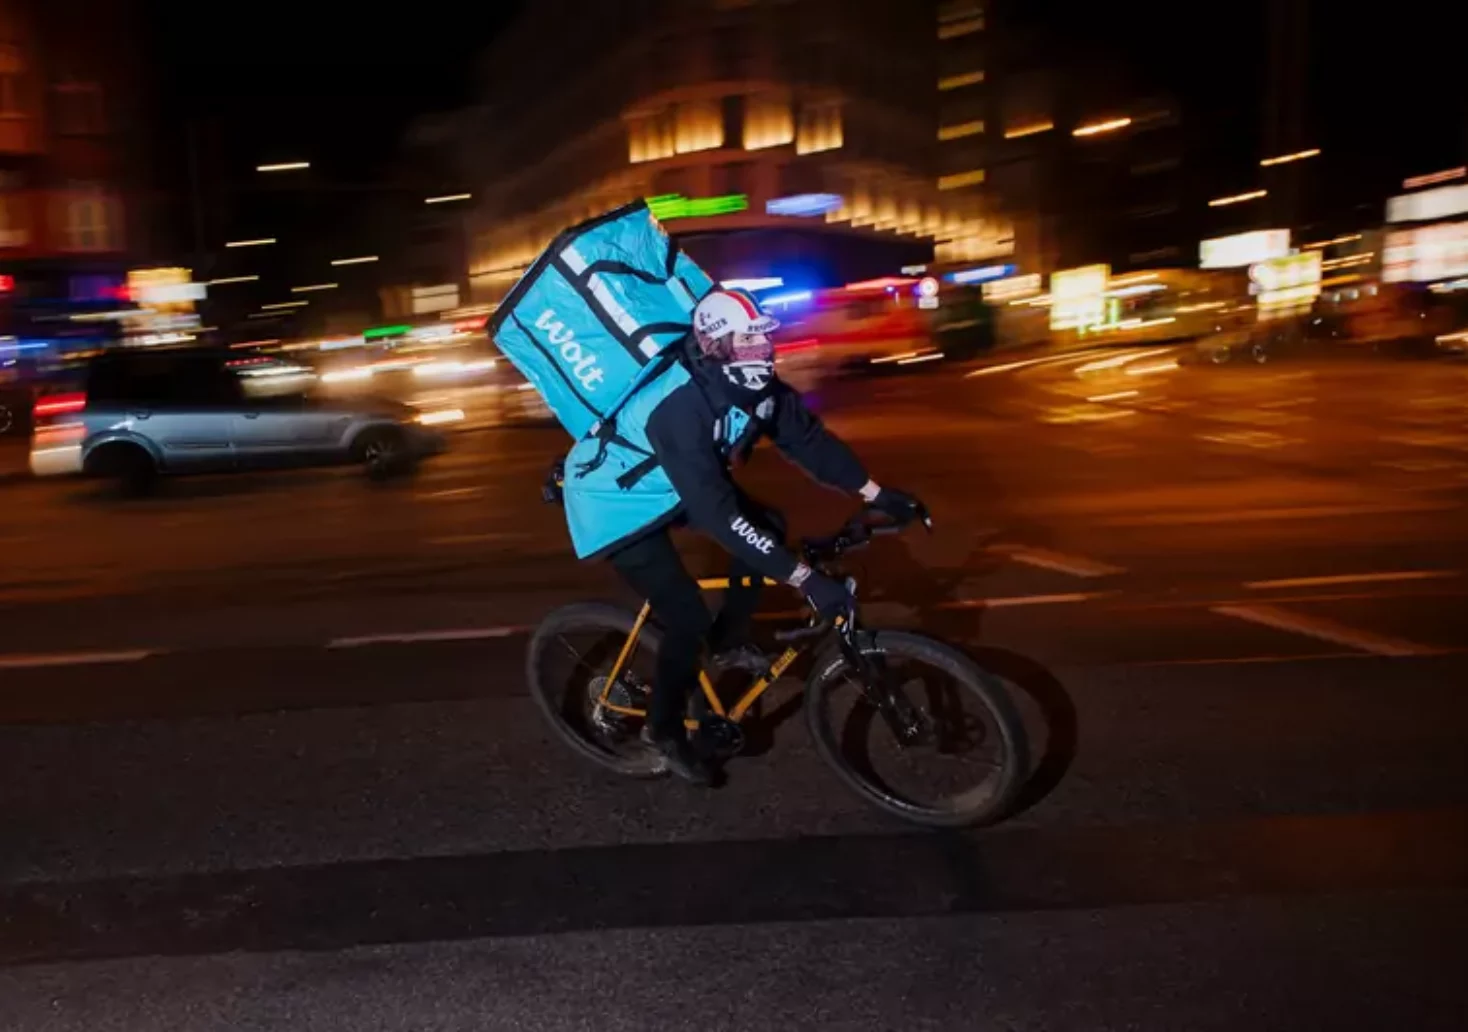 Bild auf 5min.at zeigt einen Fahrrad-Lieferanten von Wolt.